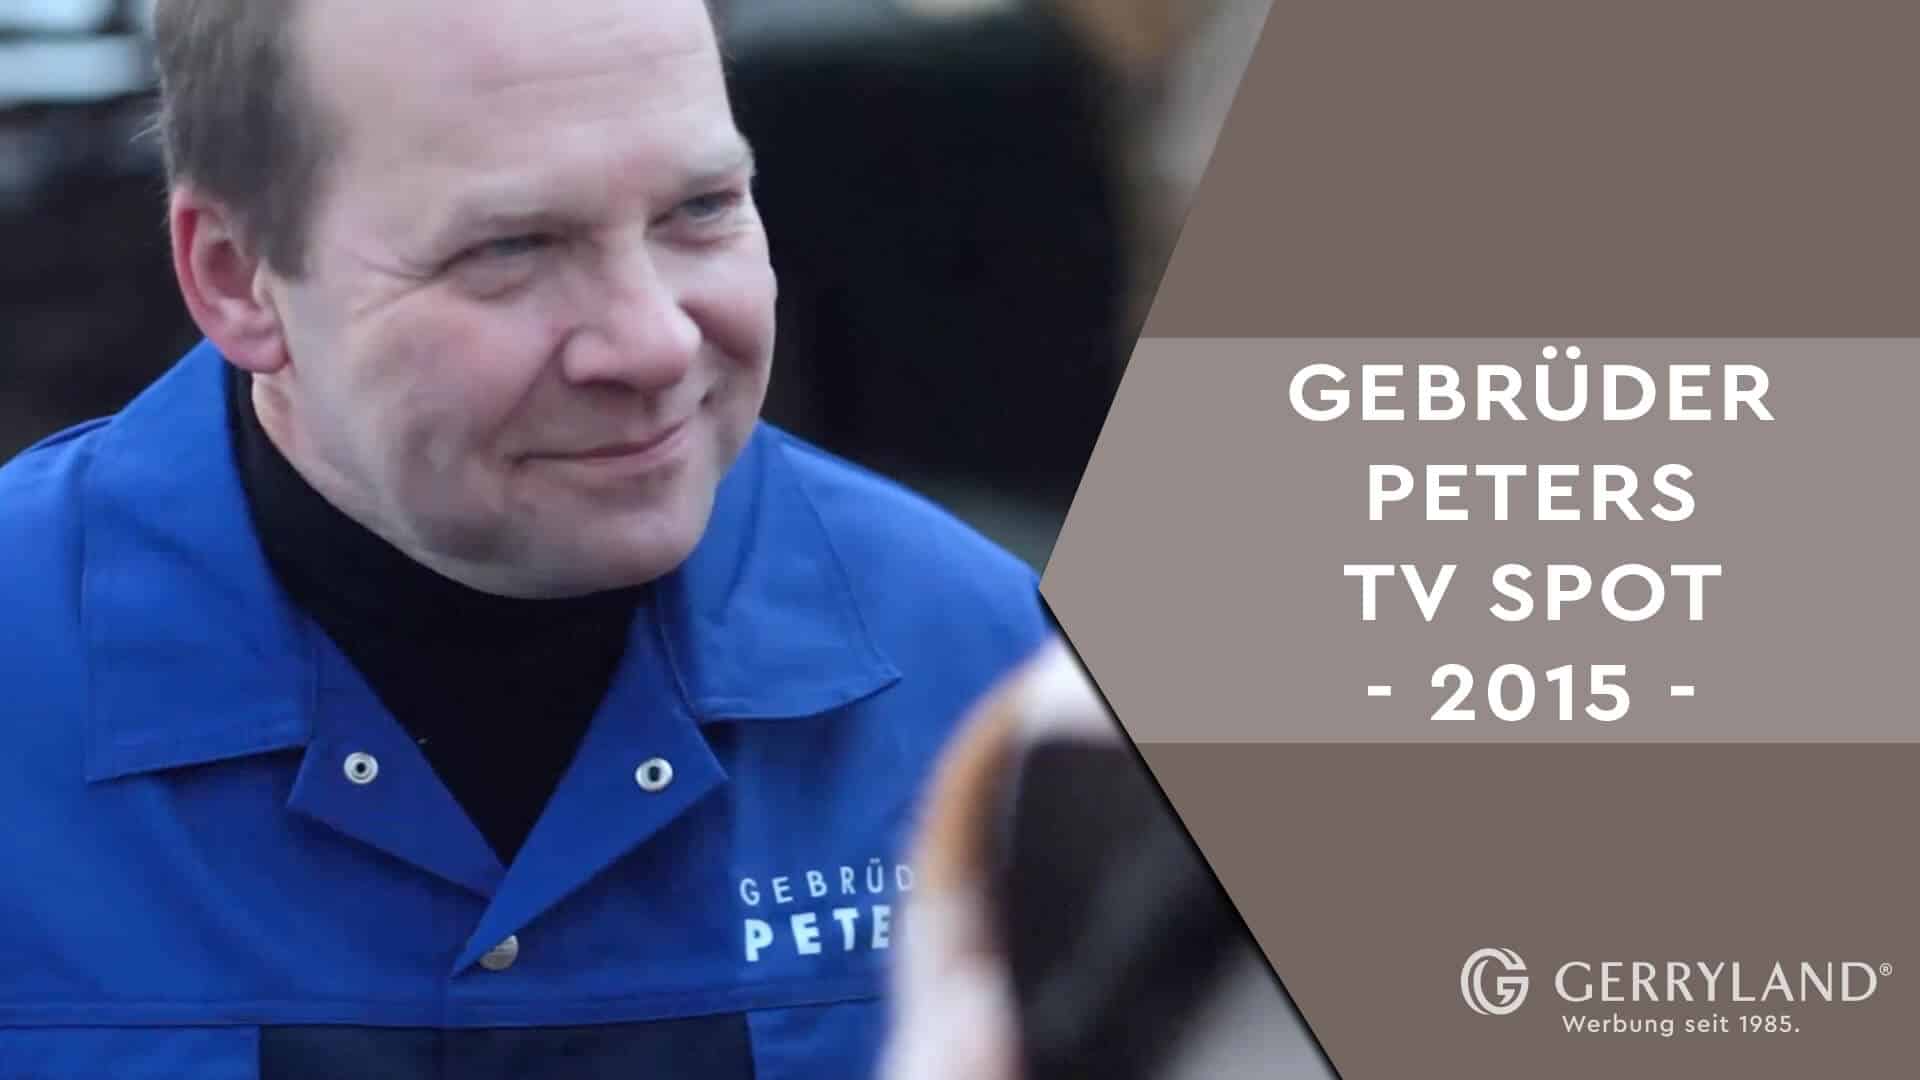 Gerryland-Youtube-Neukonzipierung-Gebrüder-Peters-TV-Spot-2015_THUMB